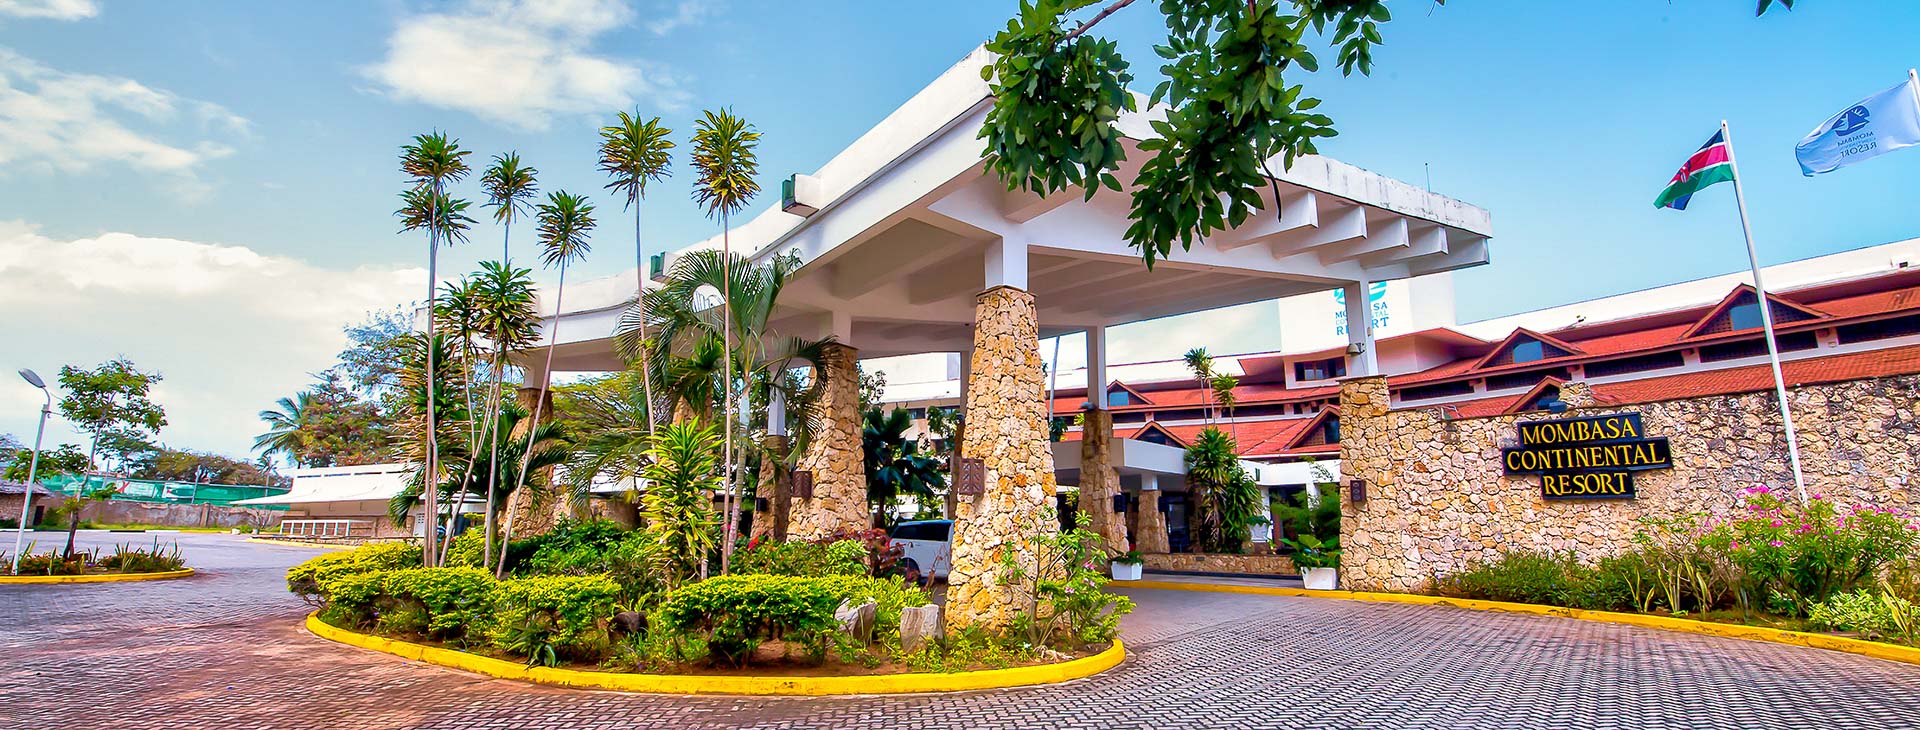 Mombasa Continental Resort Obrázok5